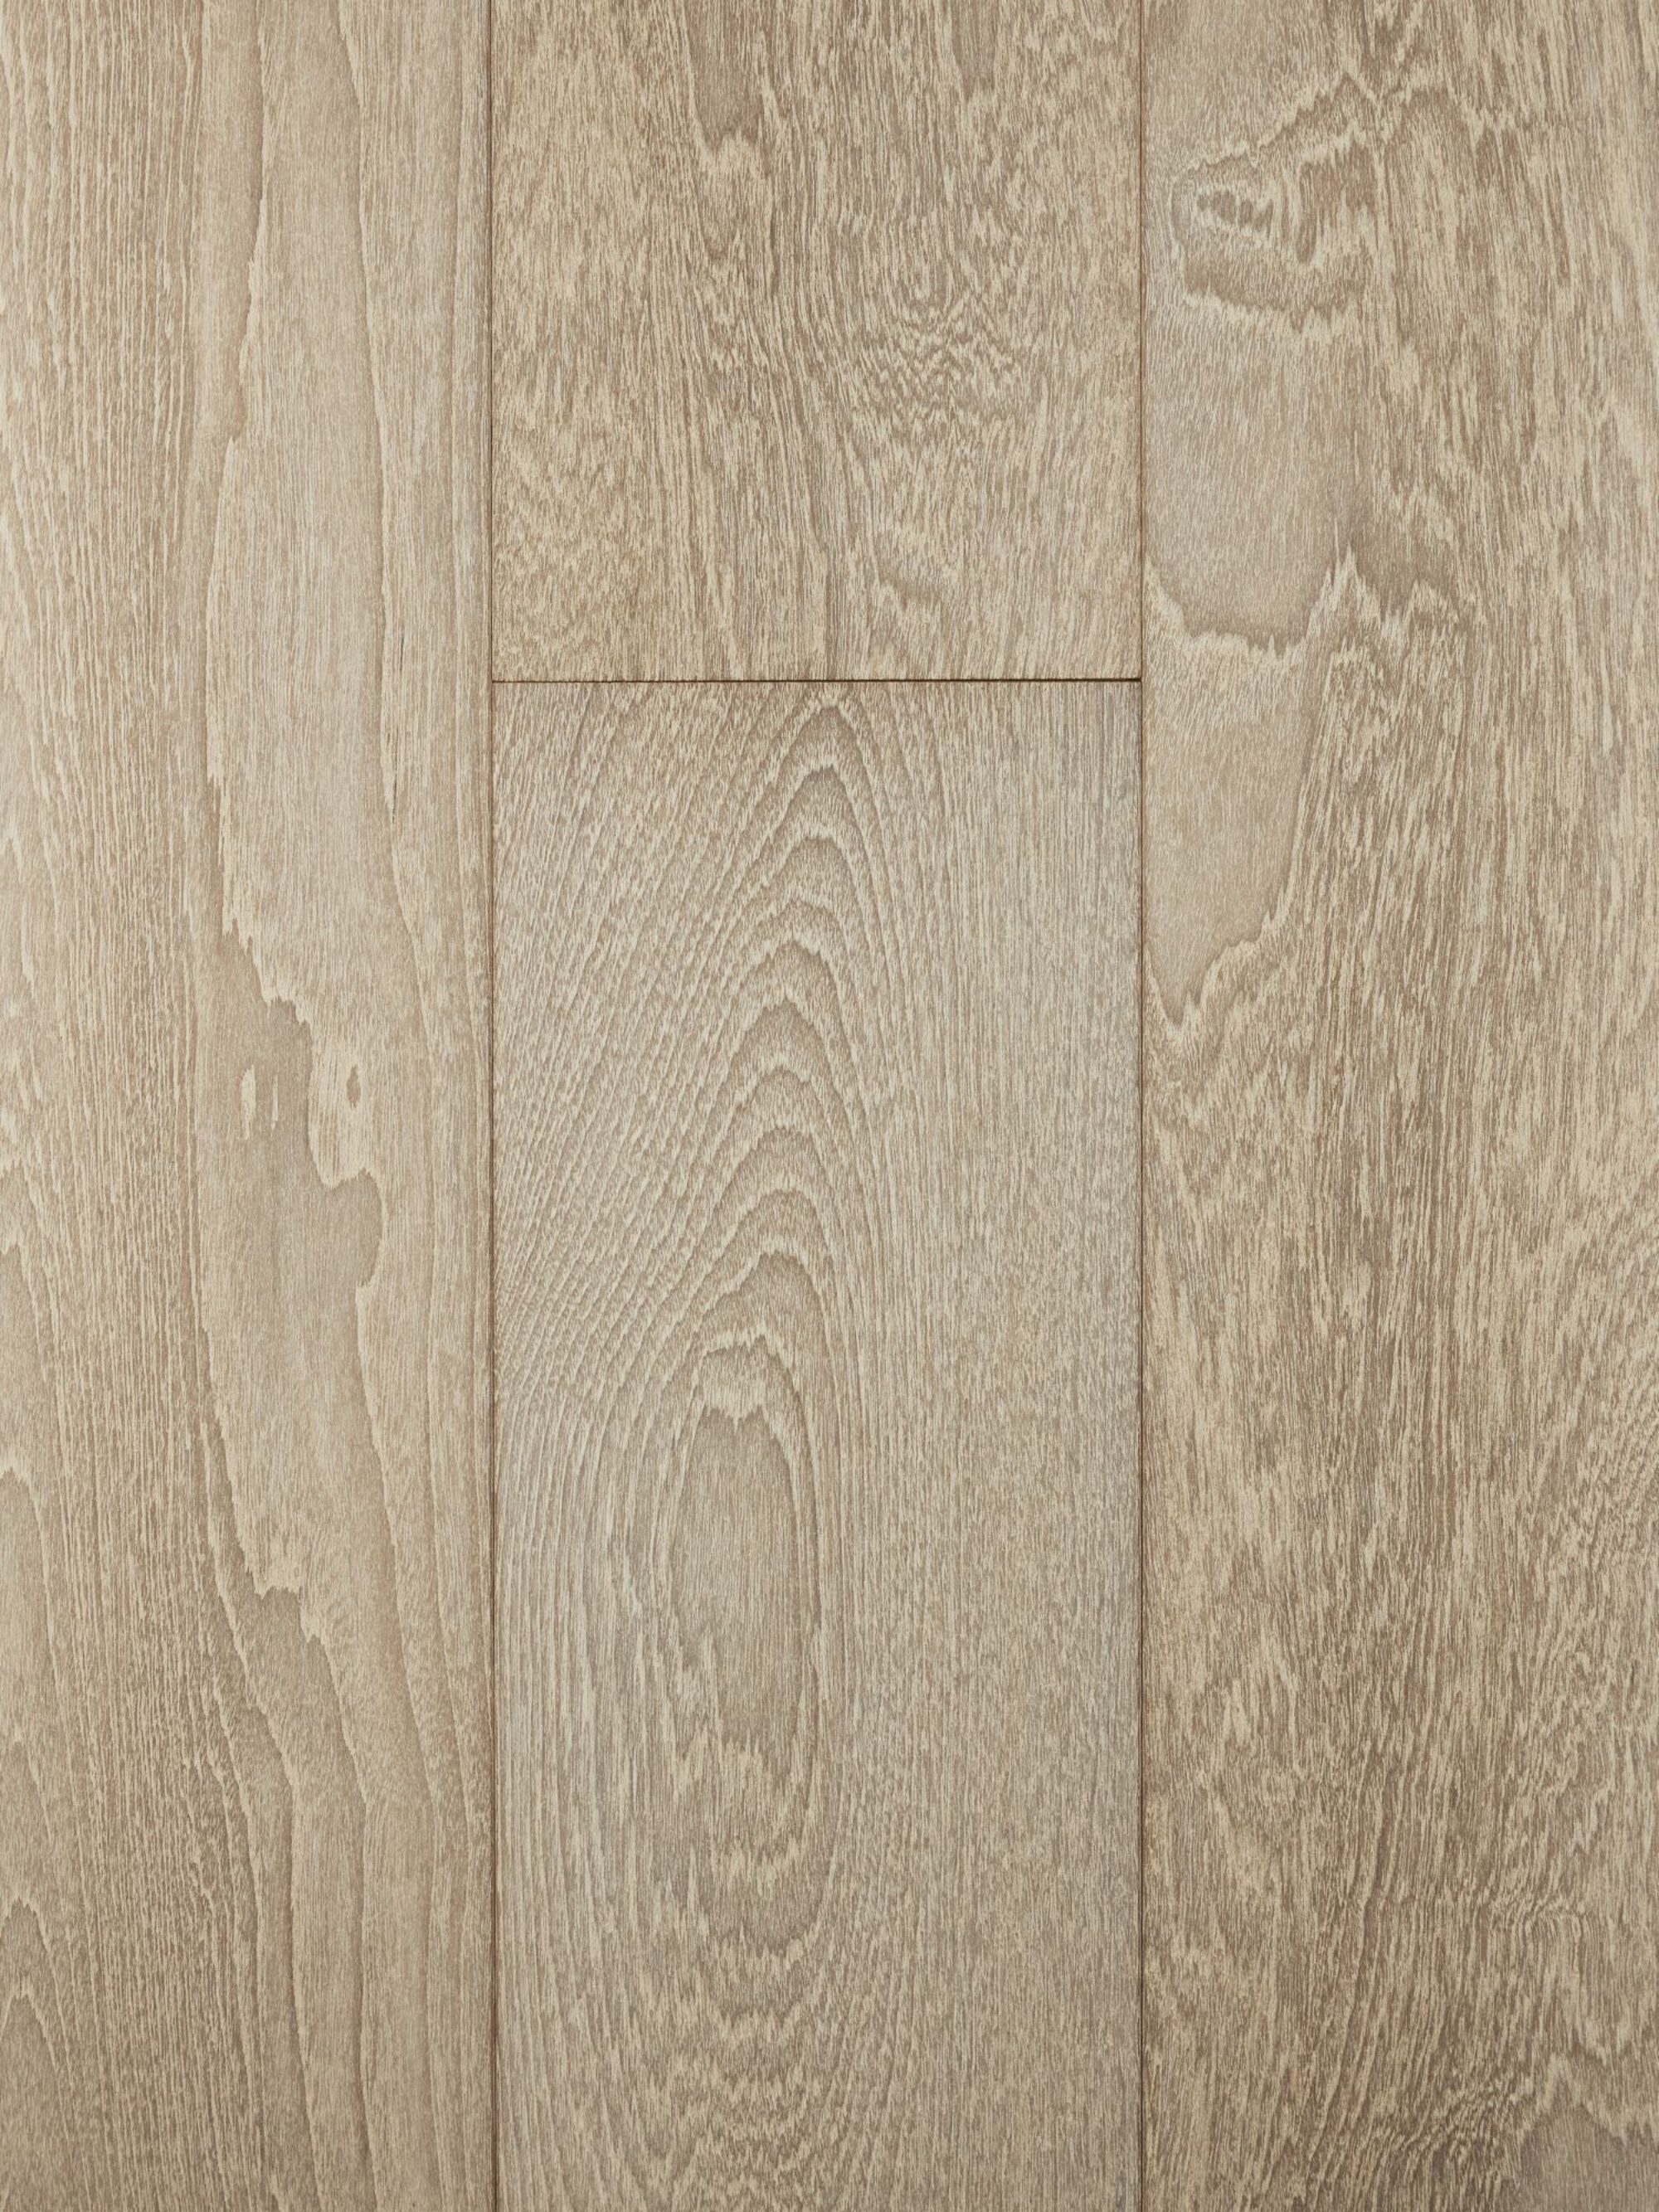 bleached teak flooring